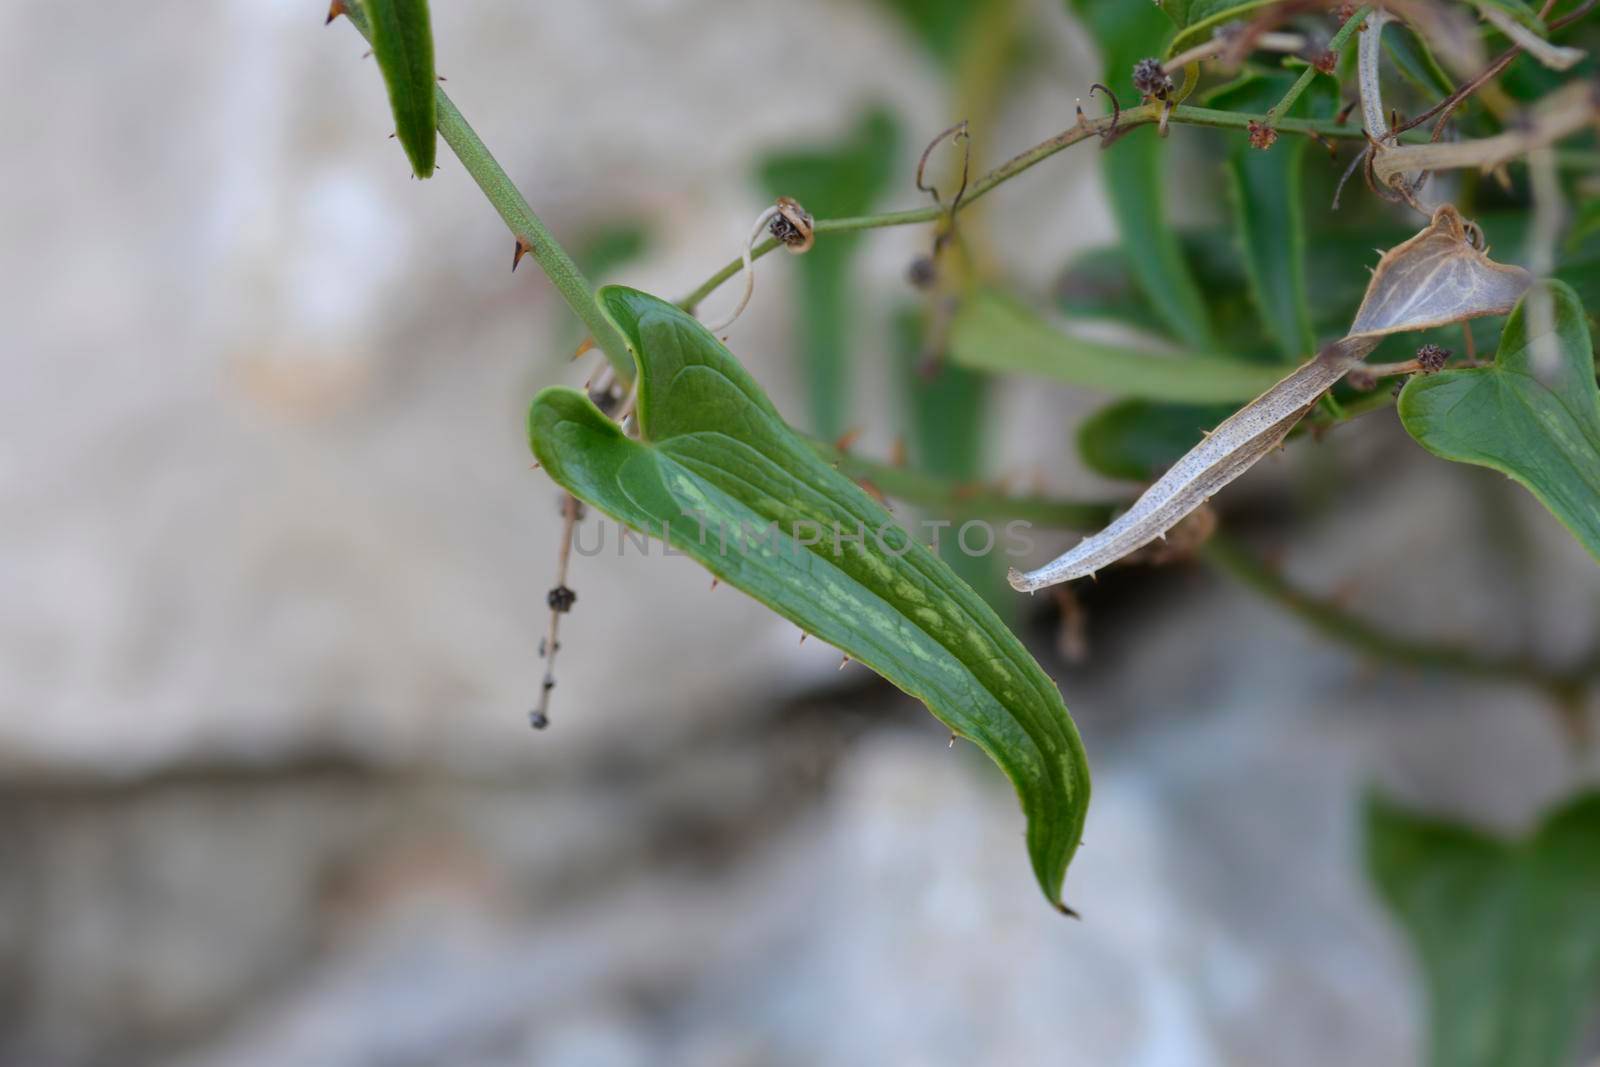 Common smilax leaves - Latin name - Smilax aspera